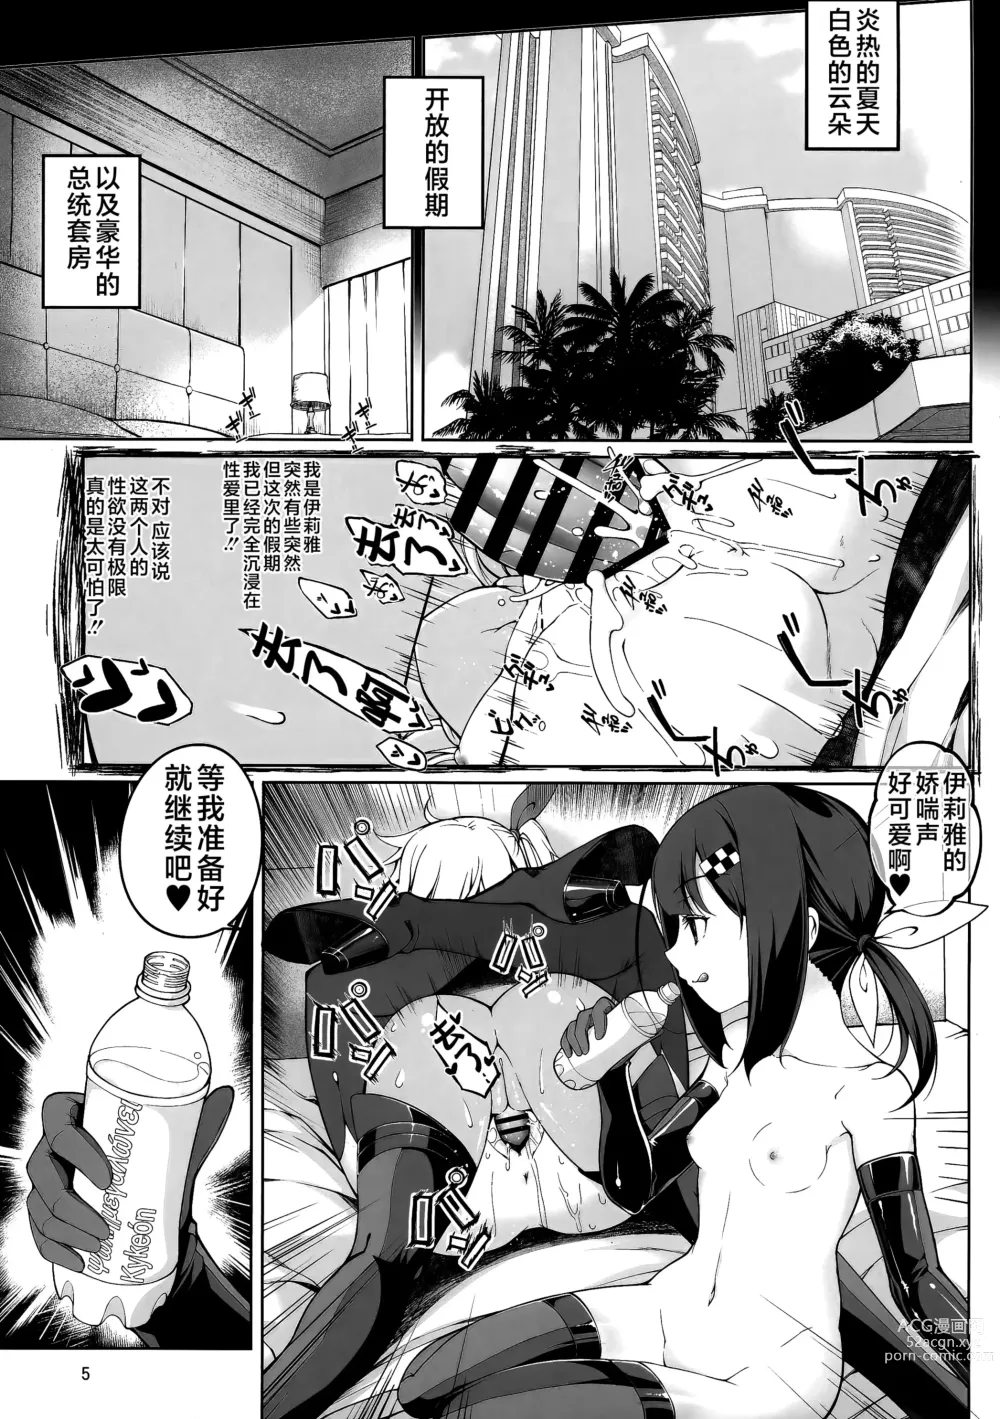 Page 5 of doujinshi SHG:08